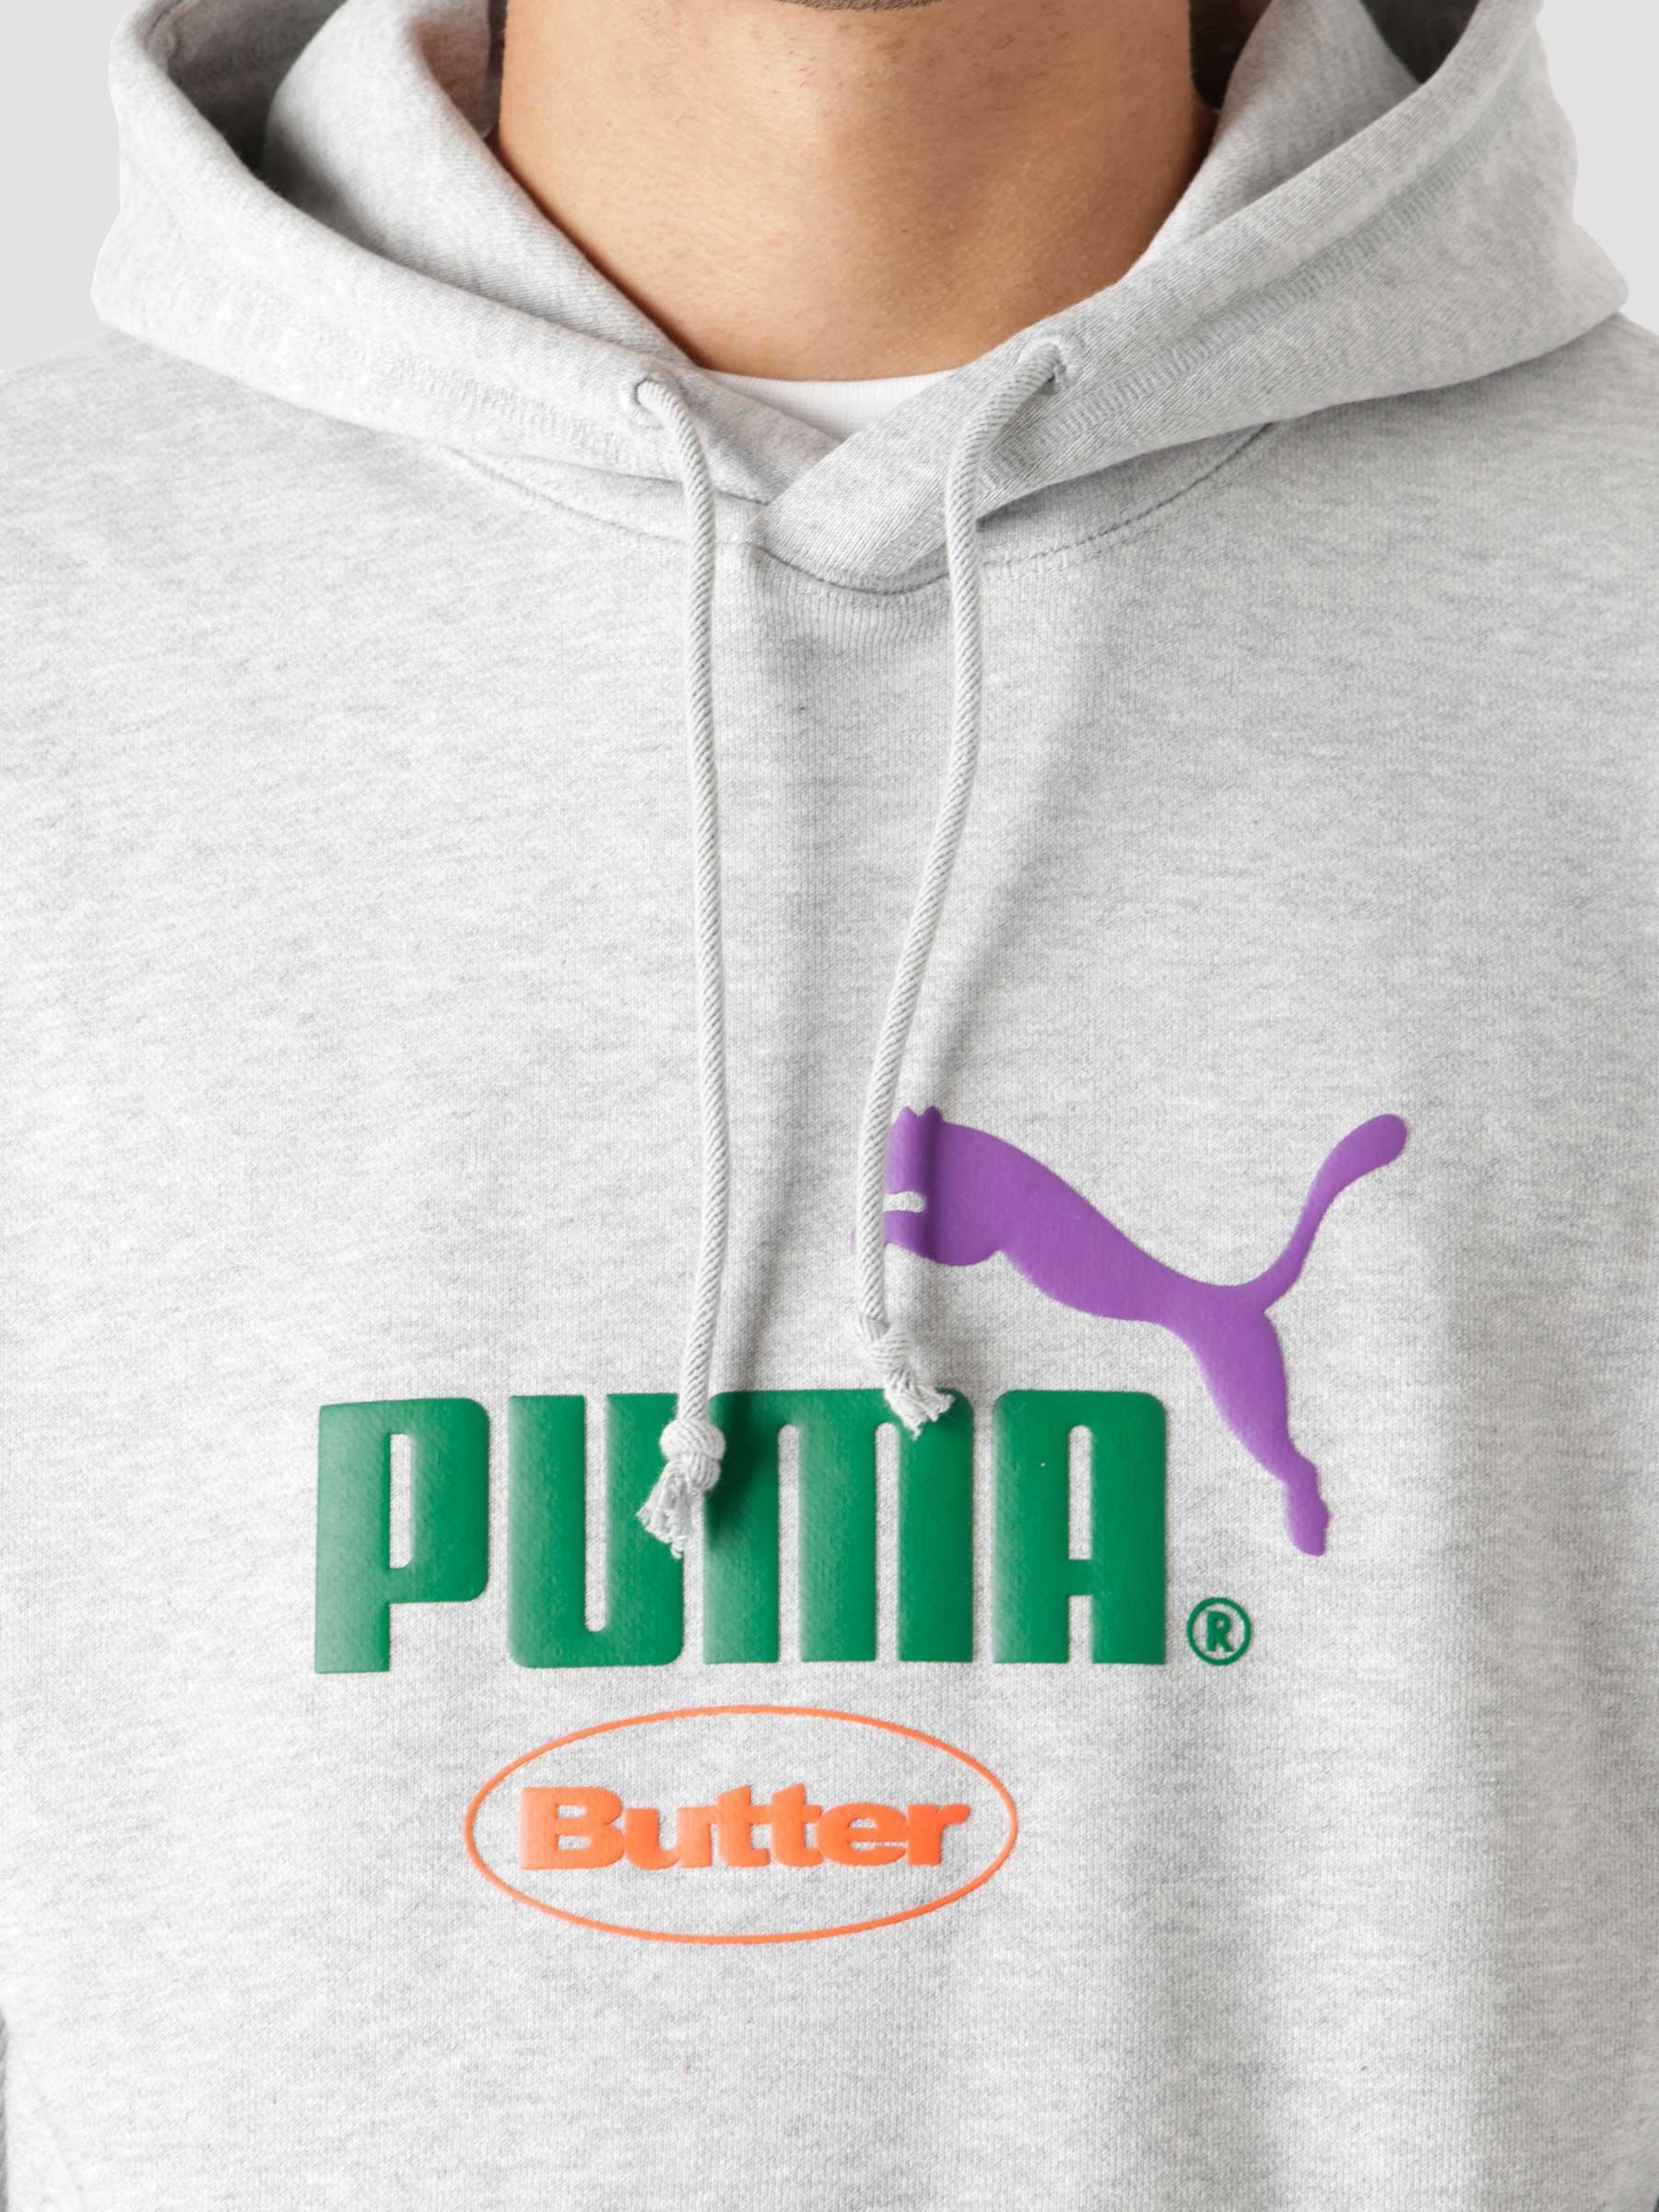 Puma X Butter Goods Hoodie Light Gray Heather 53243804